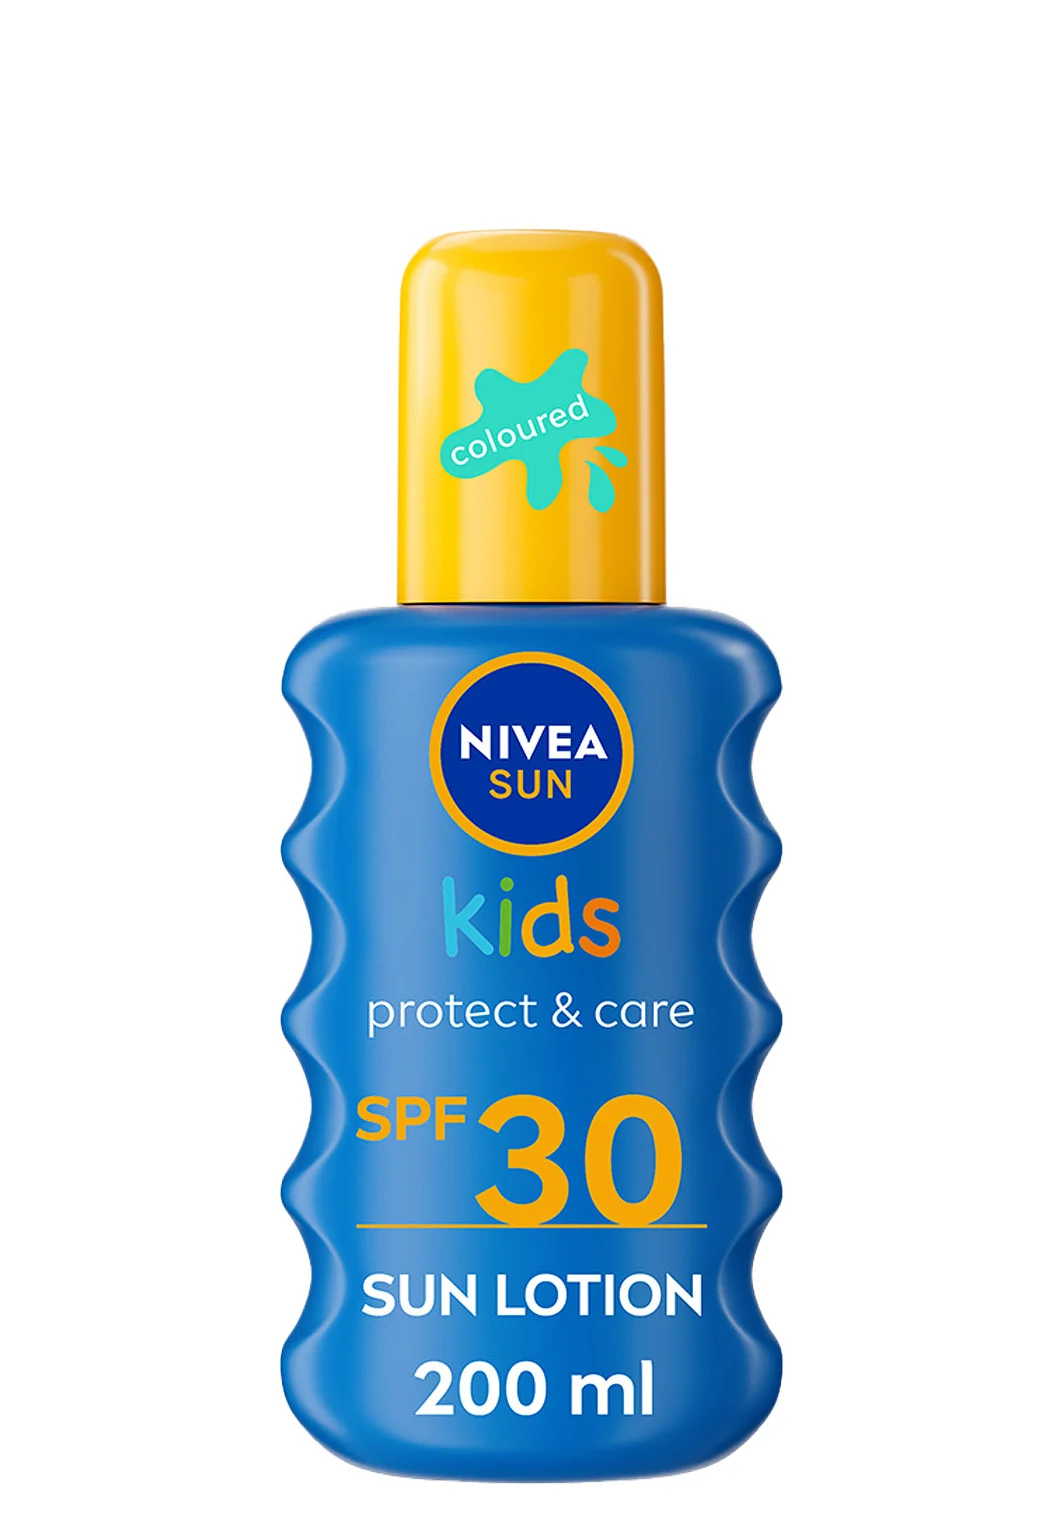 Solskydd barn Protect & Moisture Kids Sun Spray SPF30 200 ml NIVEA SUN